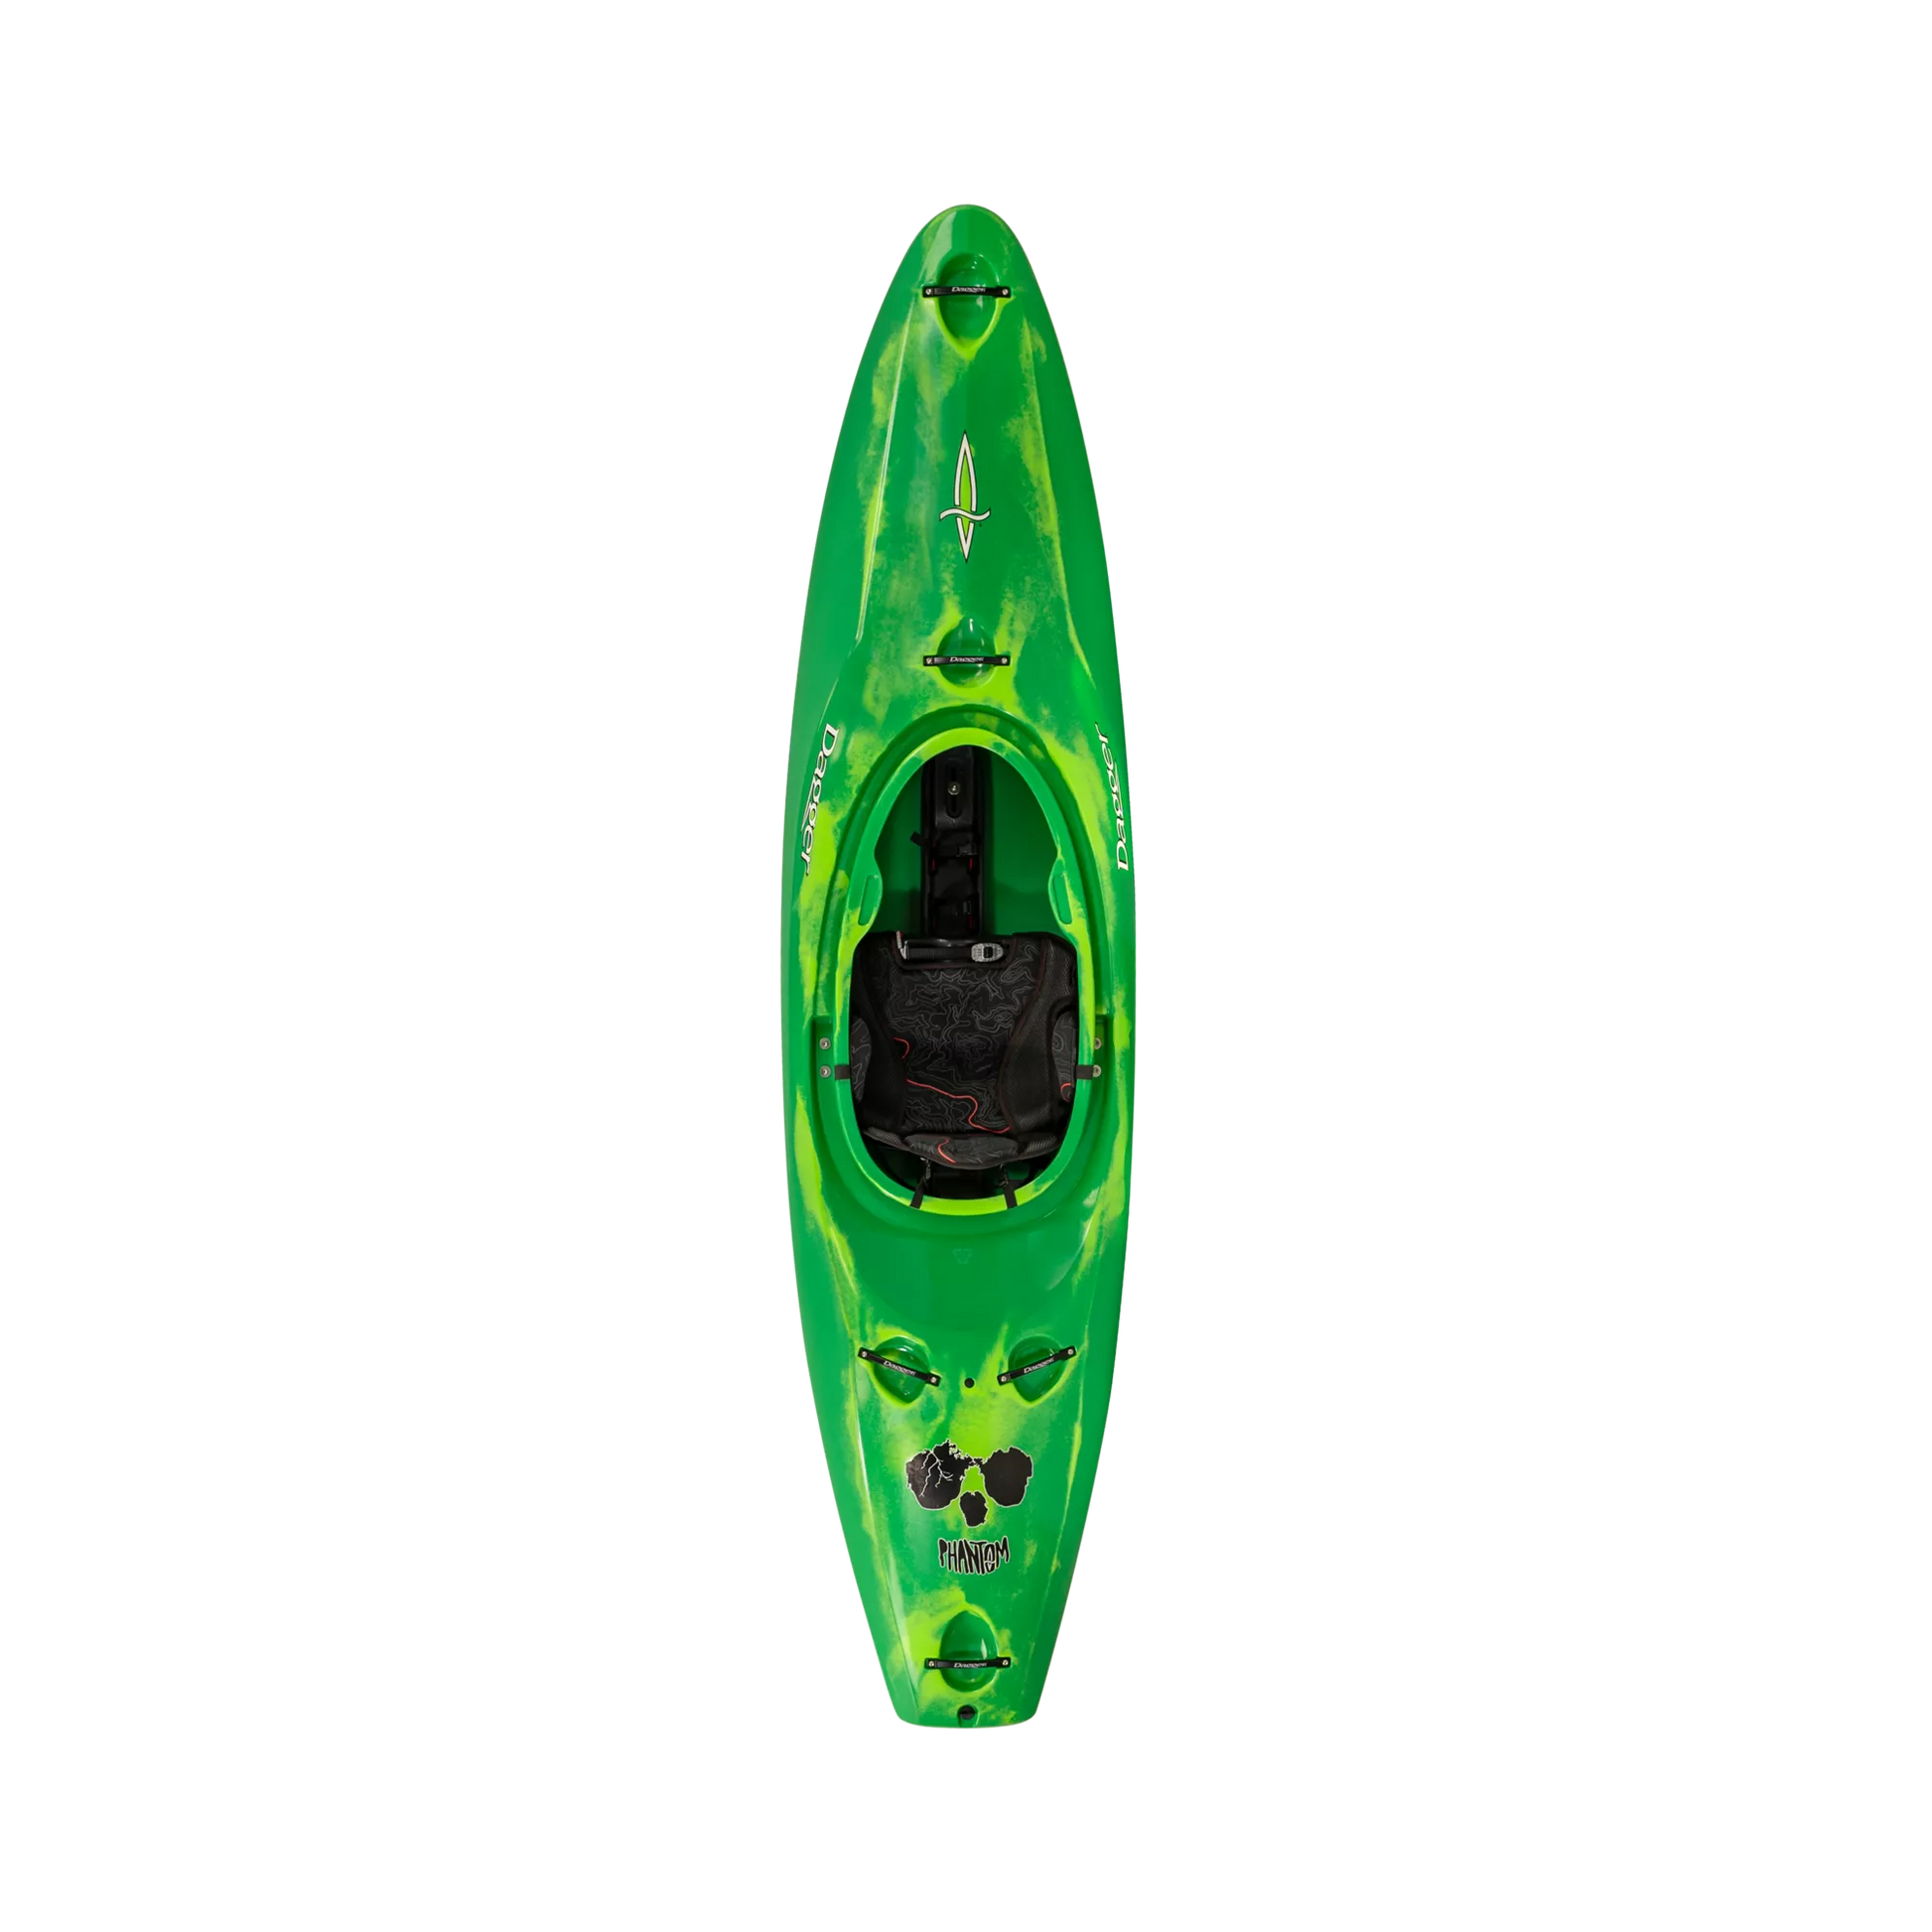 Green Smoke Dagger Phantom creek/whitewater race kayak.